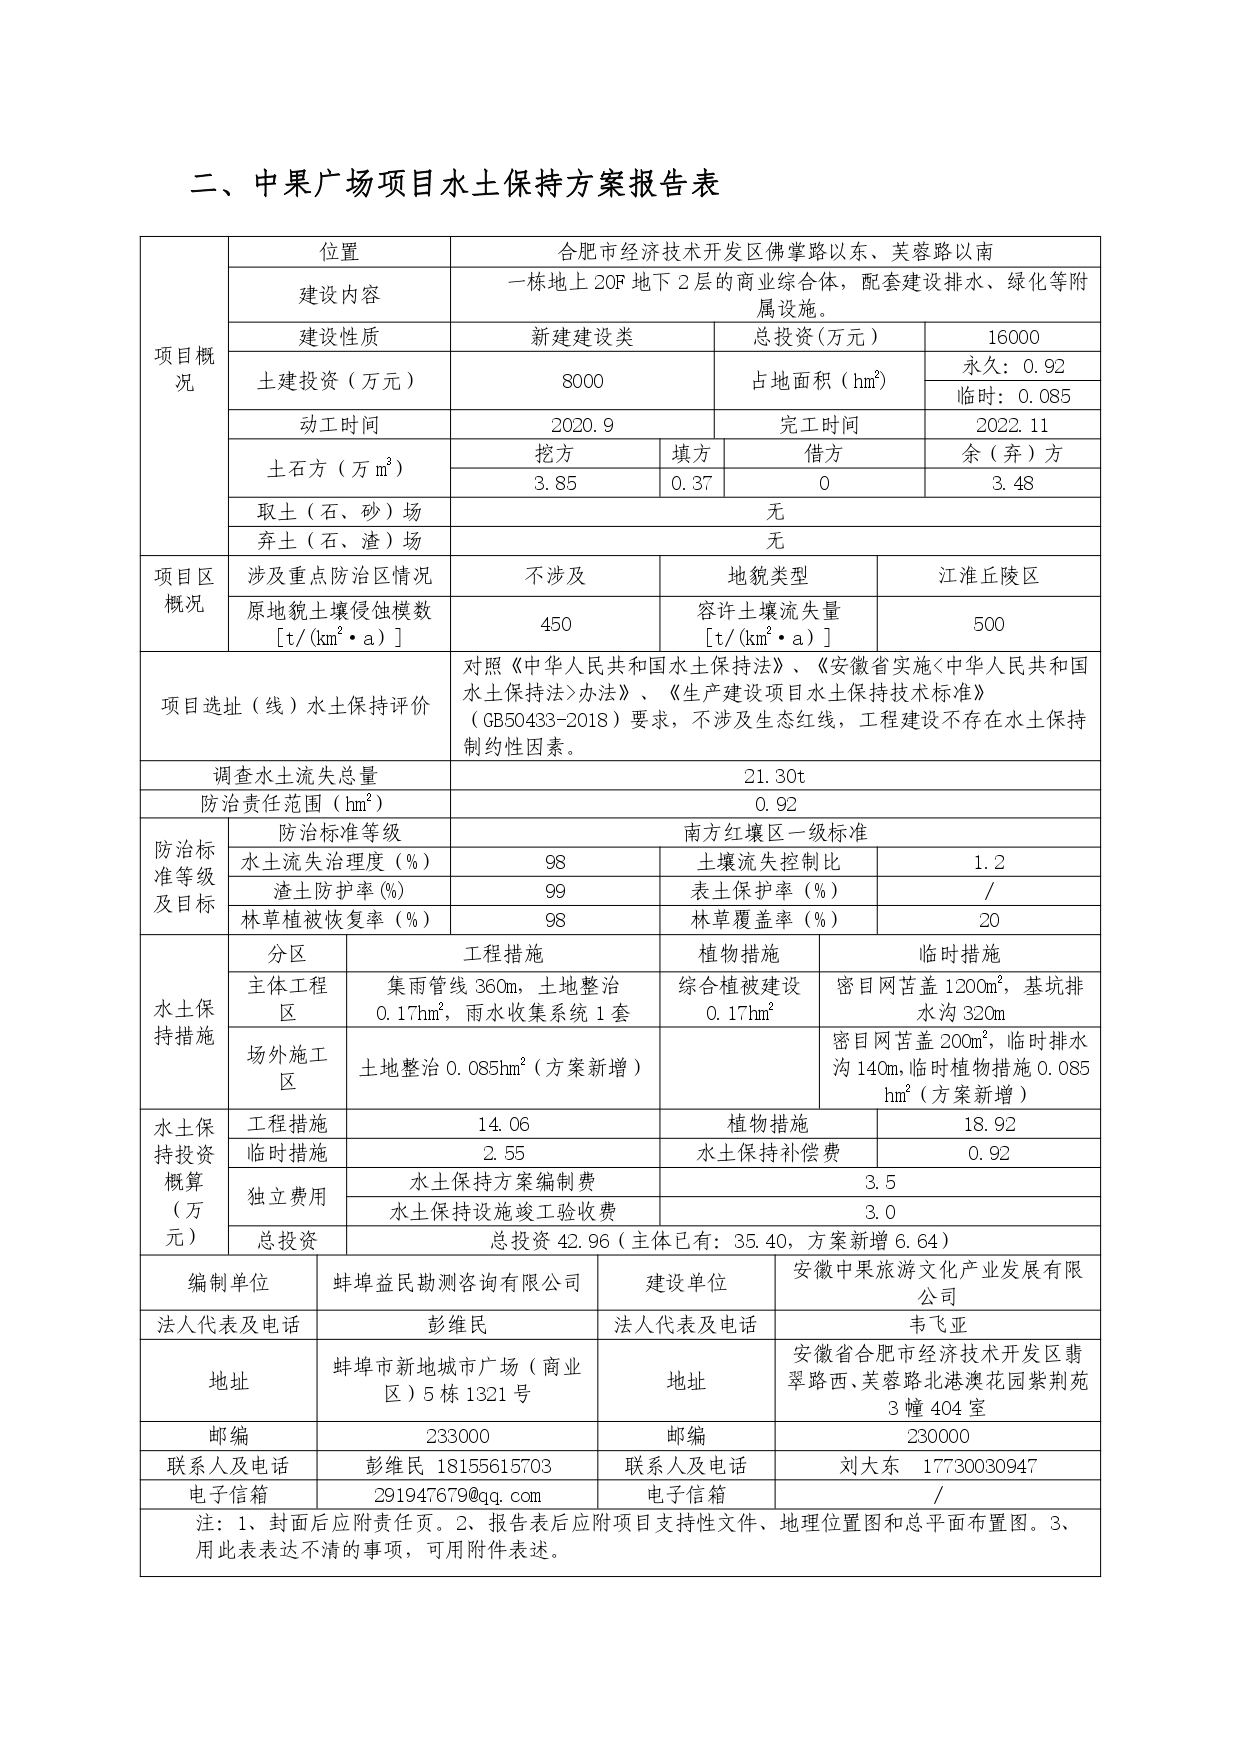 01-中果广场大厦项目水土保持报告表-打印_page-0006.jpg